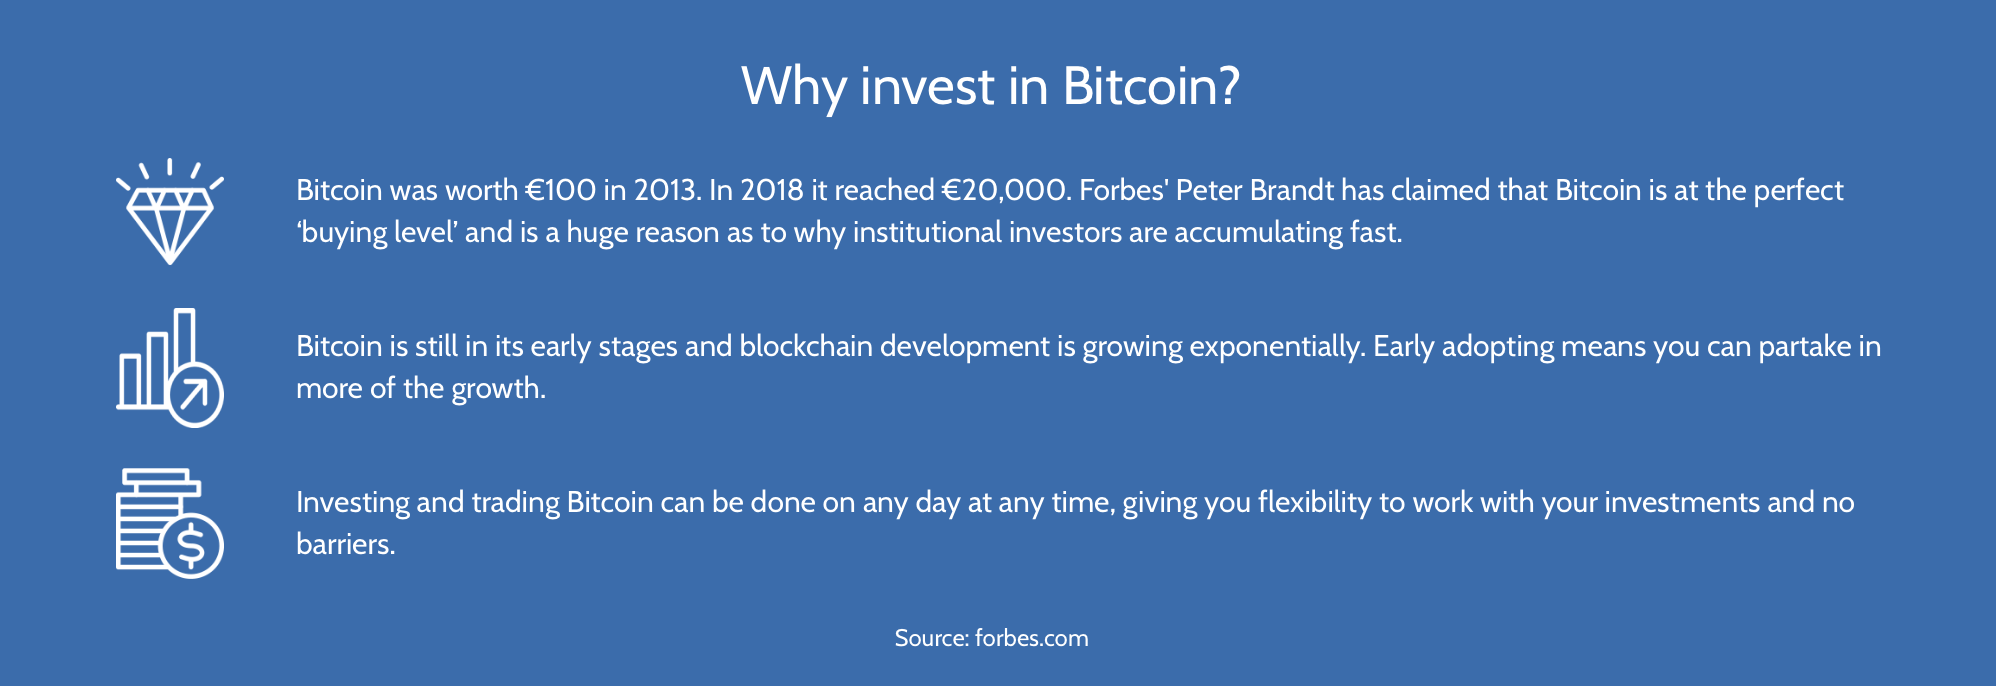 Lý do nên đầu tư vào Bitcoin